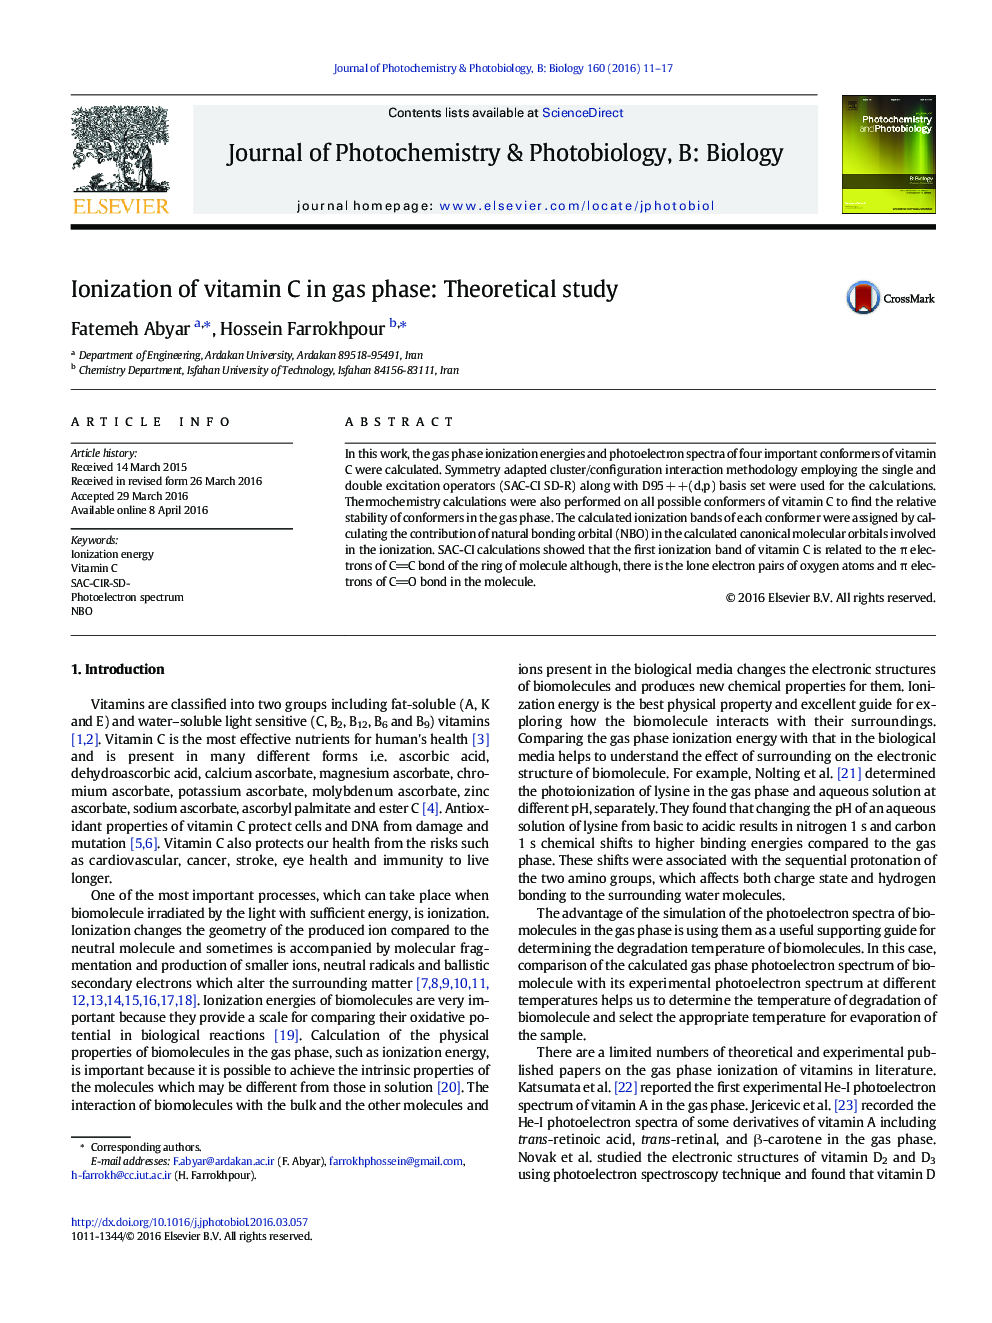 یونیزاسیون ویتامین C در فاز گازی: مطالعه نظری